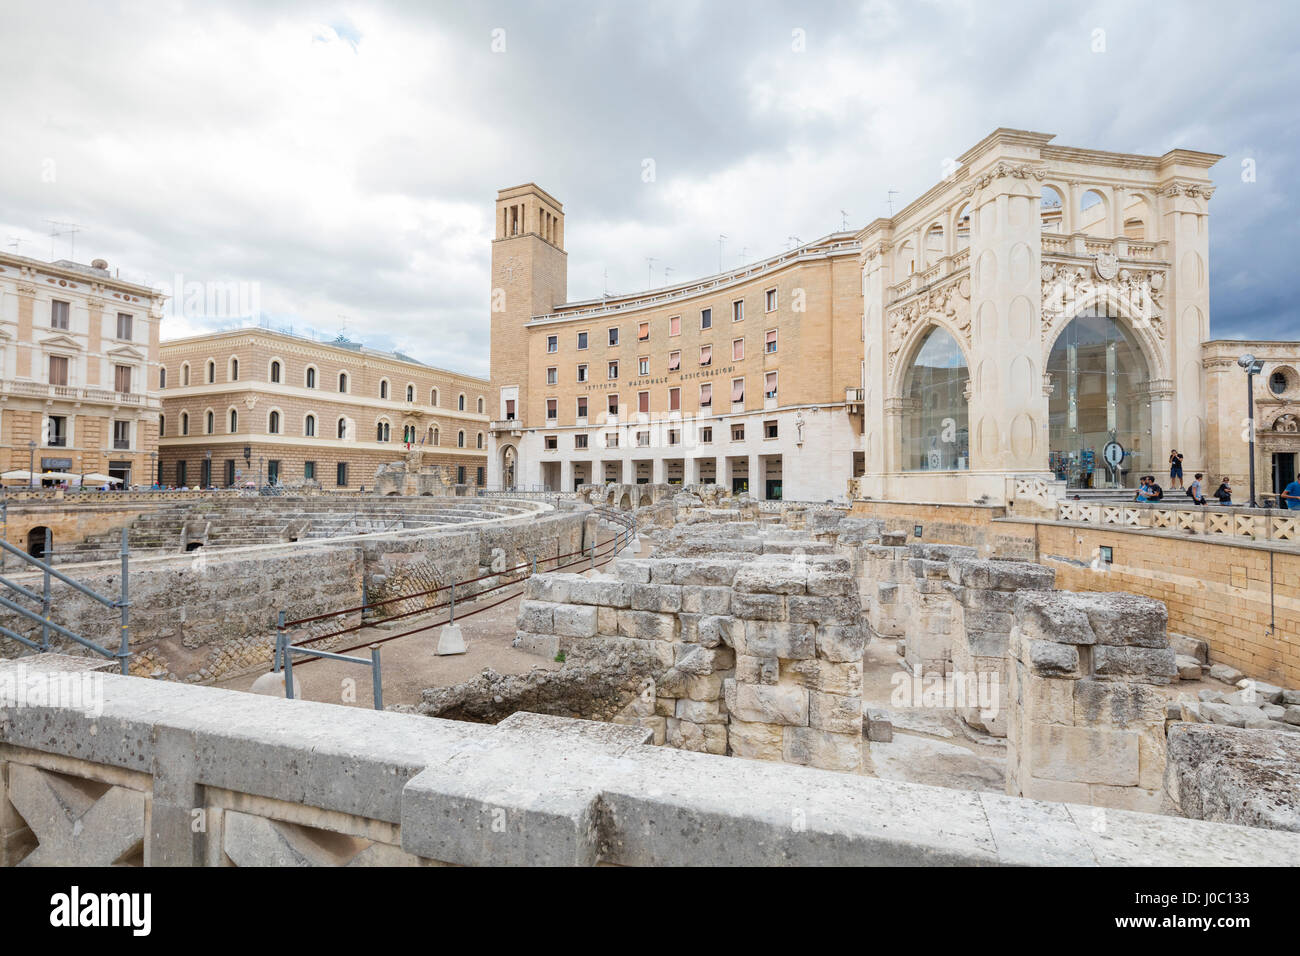 Antiguas ruinas romanas y los edificios históricos de la ciudad vieja, Lecce, Puglia, Italia Foto de stock